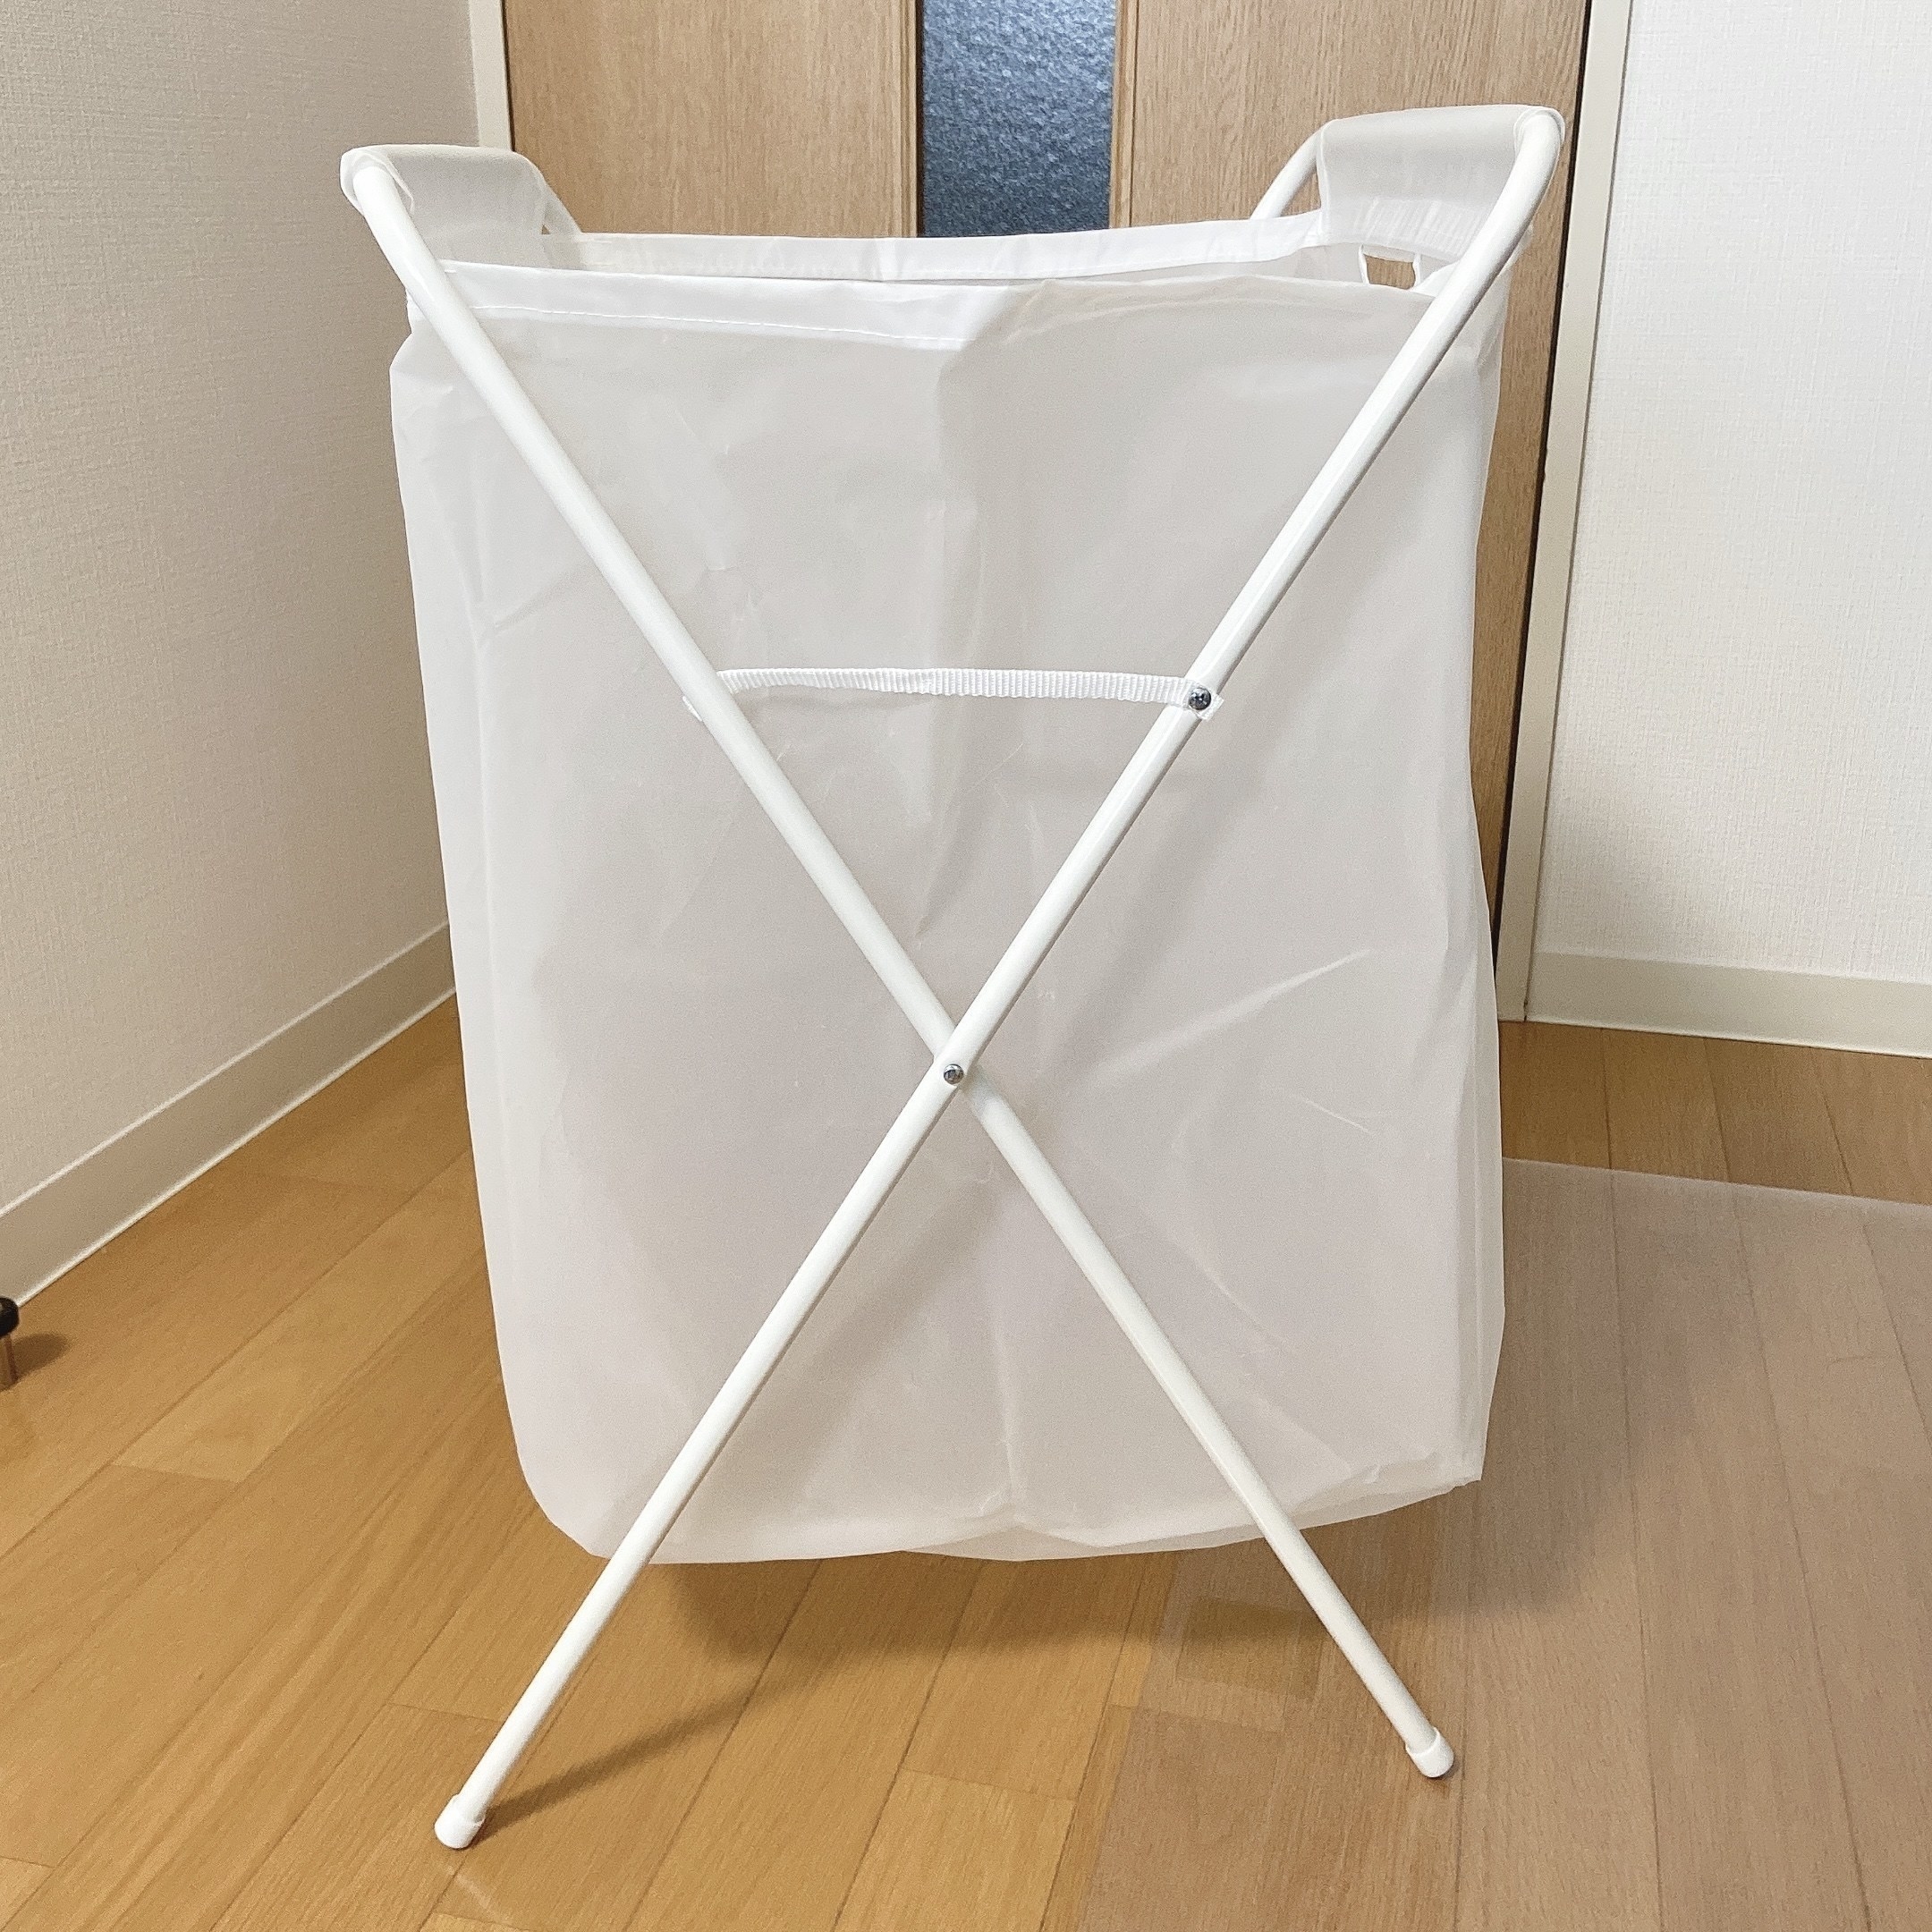 IKEA（イケア）のおすすめの便利アイテム「JÄLL イェル ランドリーバッグ スタンド付き」